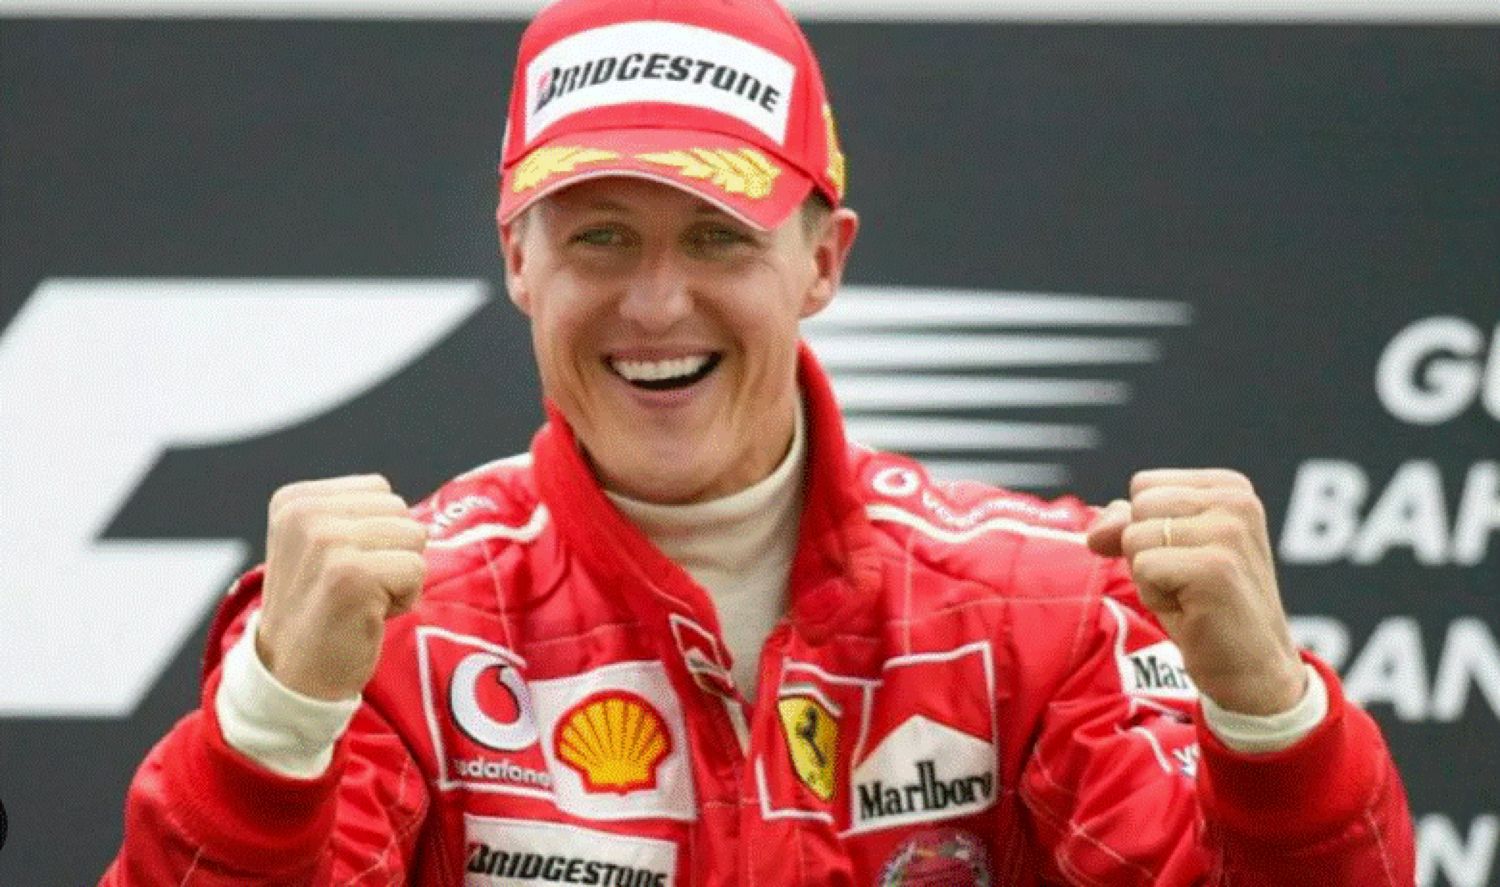 Ultima veste despre Michael Schumacher. Ce se întâmplă acum cu marele sportiv